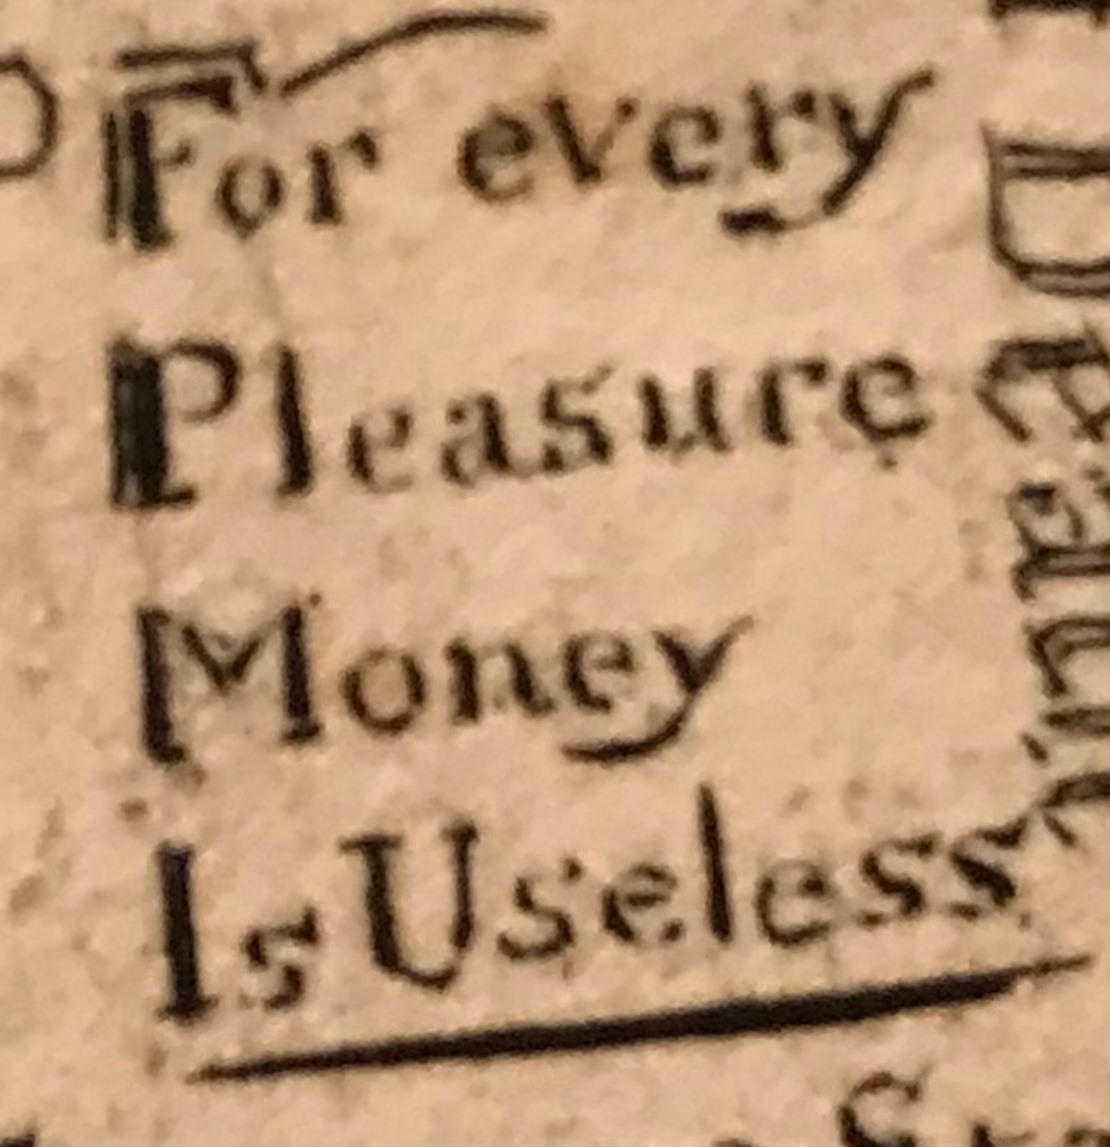 William Blake @FitzMuseum_UK “For every Pleasure Money Is Useless” #blake